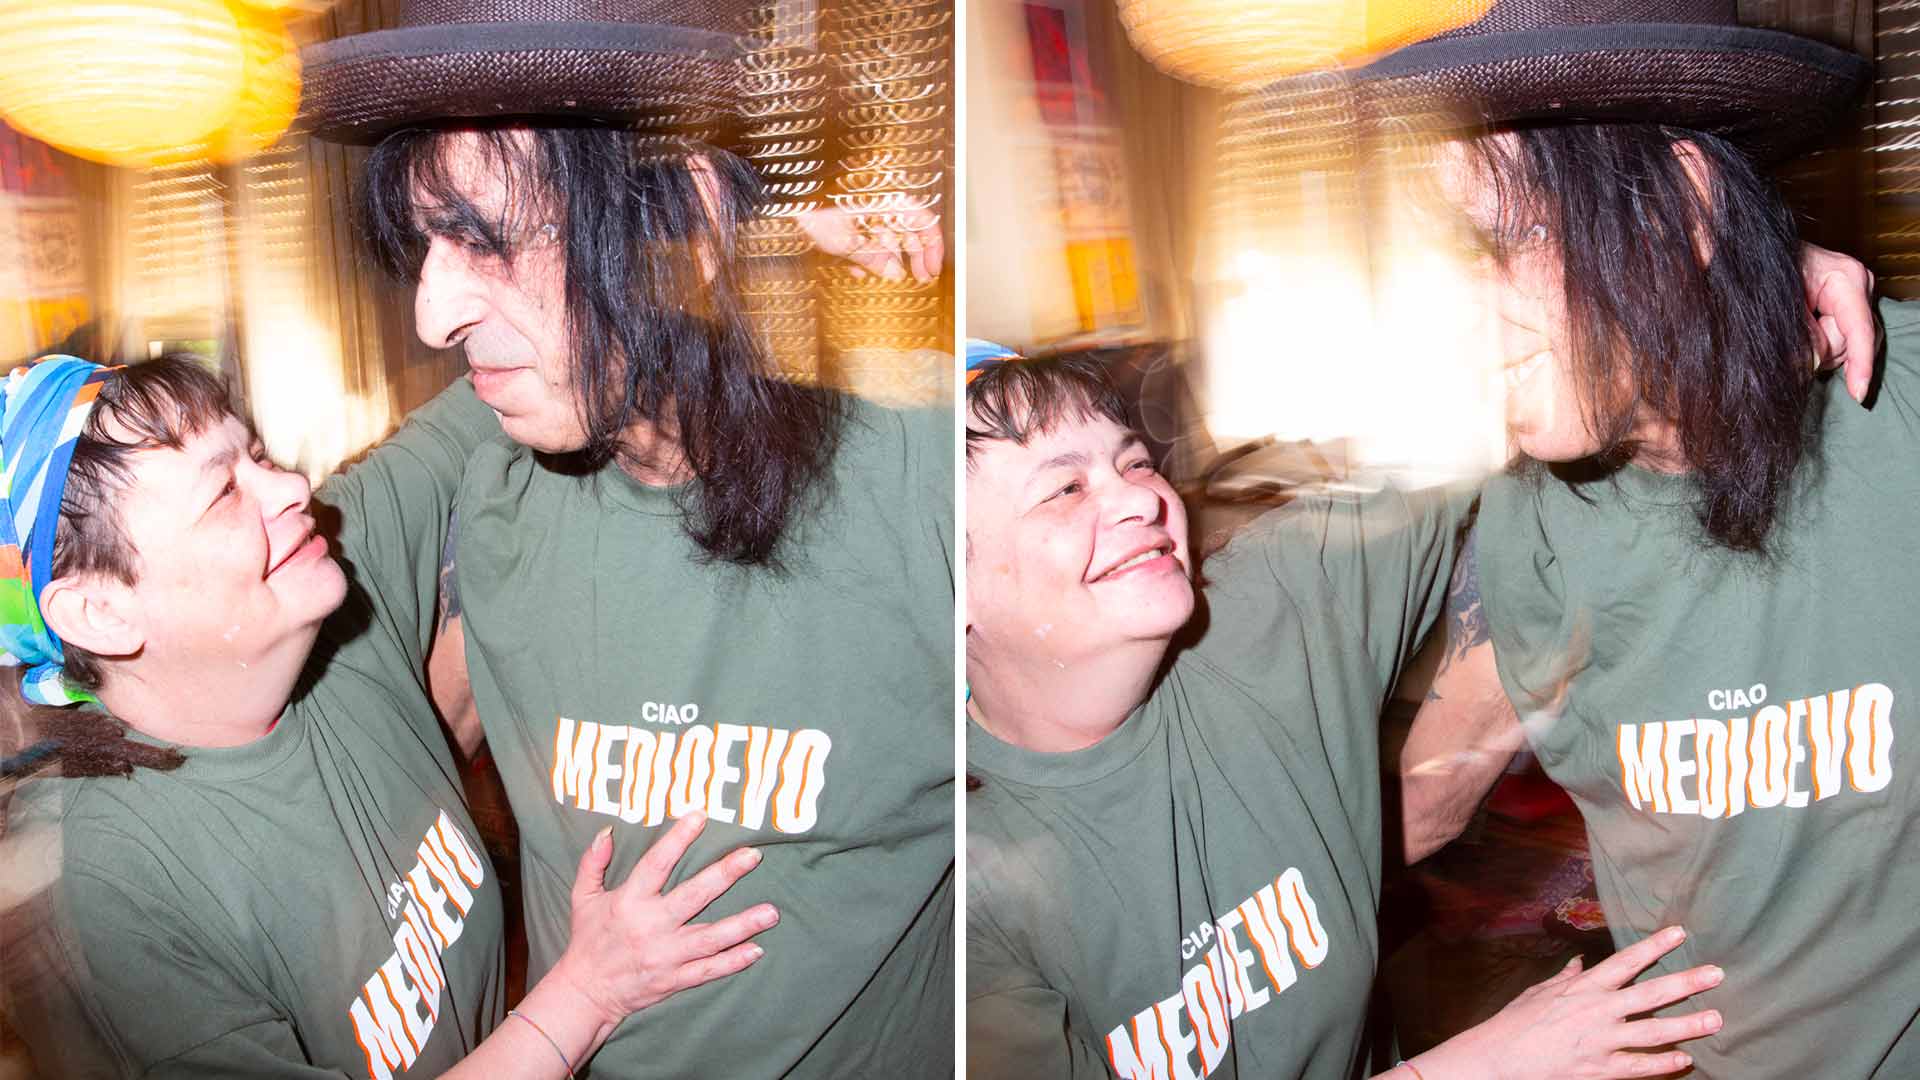 Dome La Muerte è il simbolo del punk rock e dell’underground italiano. Qui ritratto con sua moglie Cristina Rovini, pittrice psichedelica e musa - Foto di Ray Banhoff